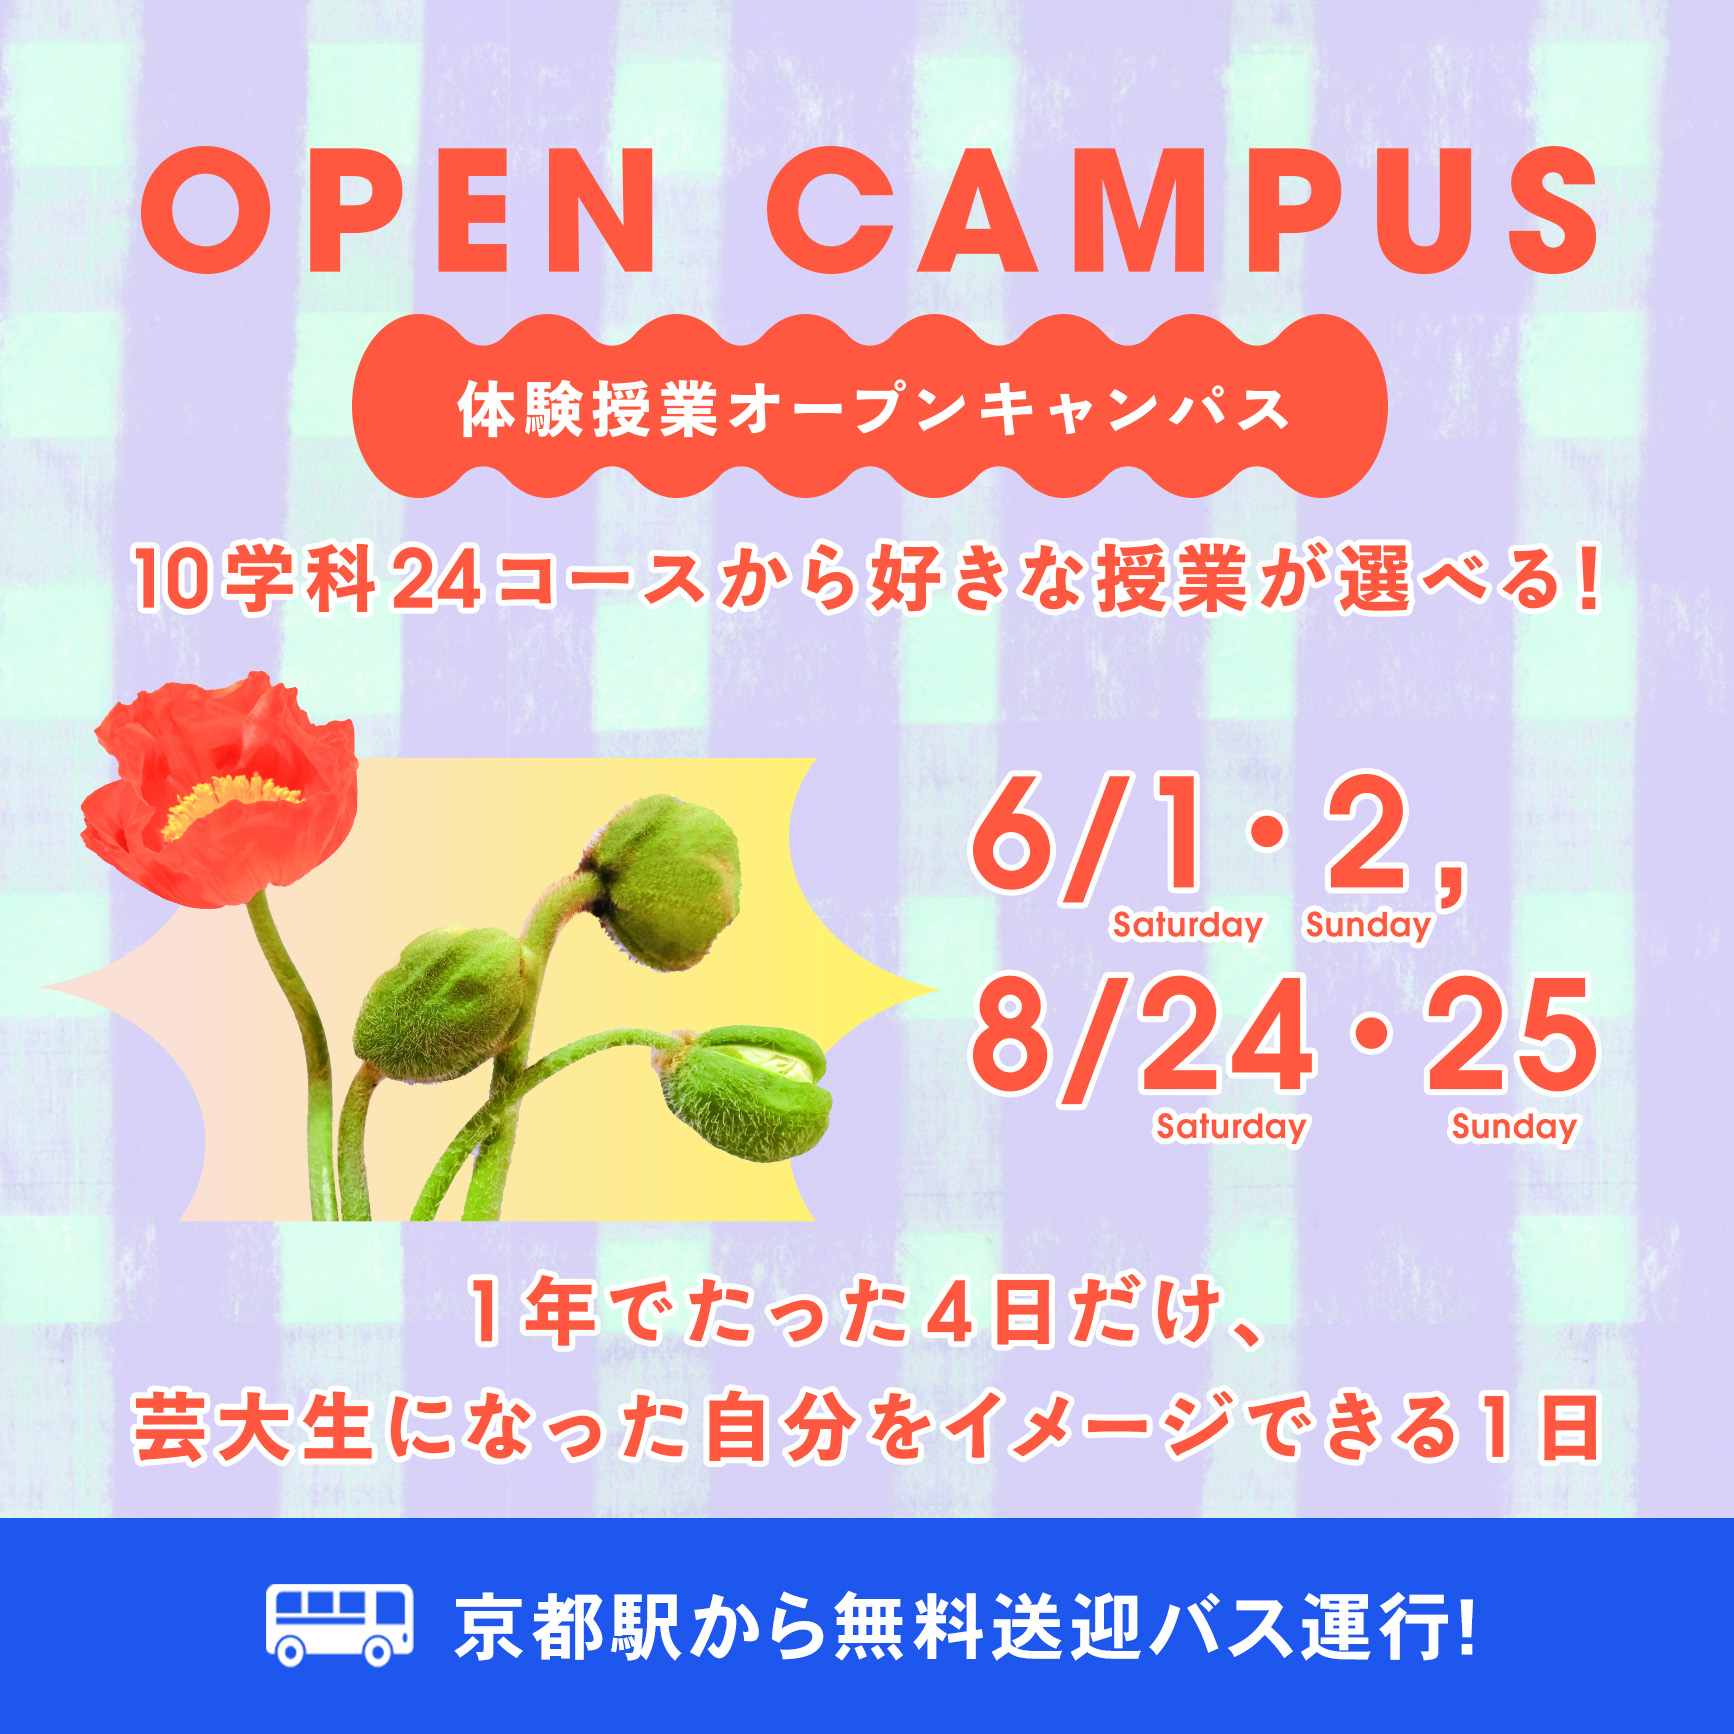 京都芸術大学のオープンキャンパス詳細